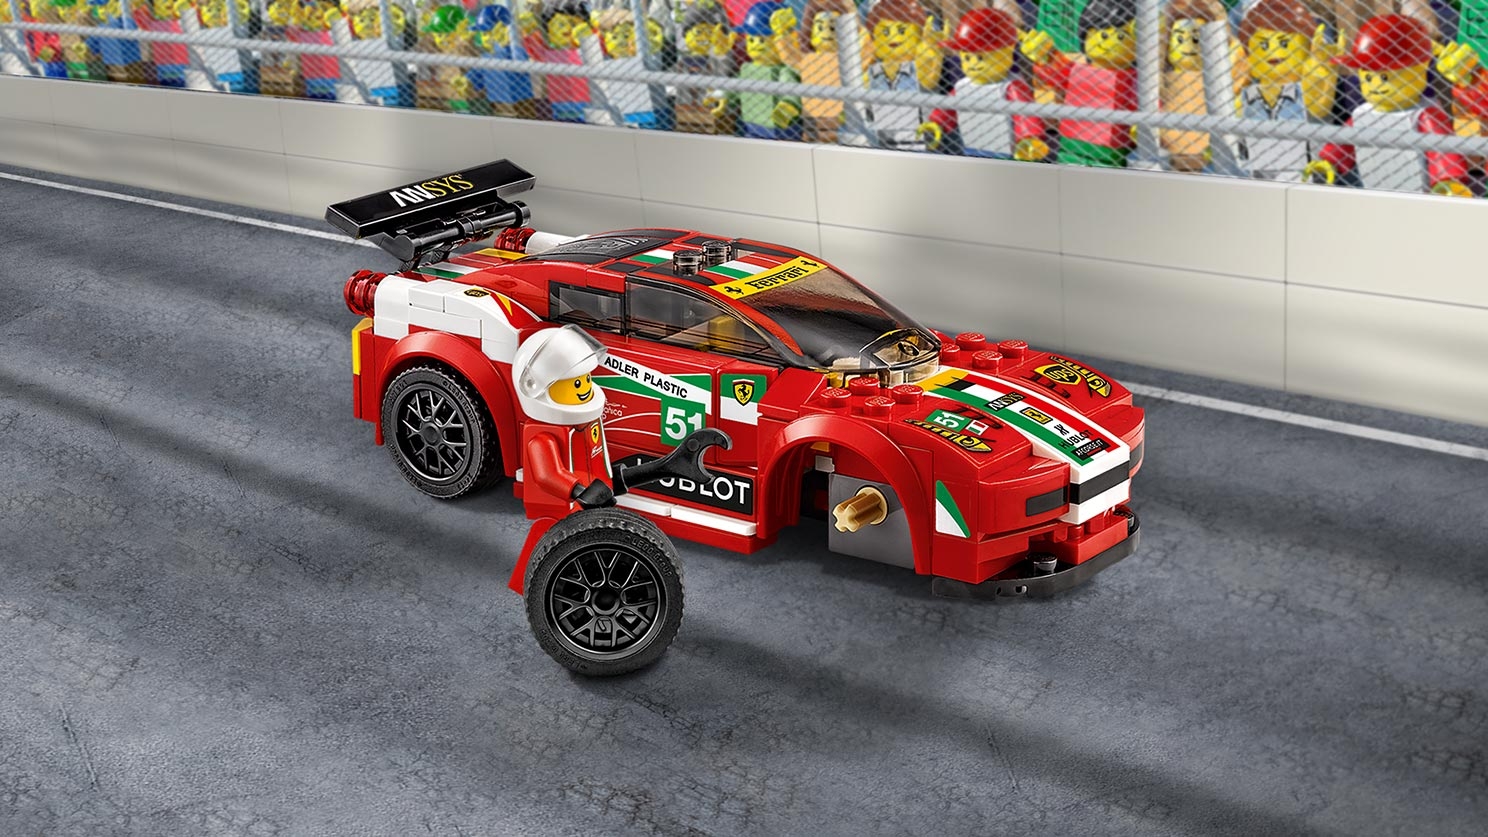 458 イタリア GT2 75908 - レゴ®スピードチャンピオン セット - LEGO ...